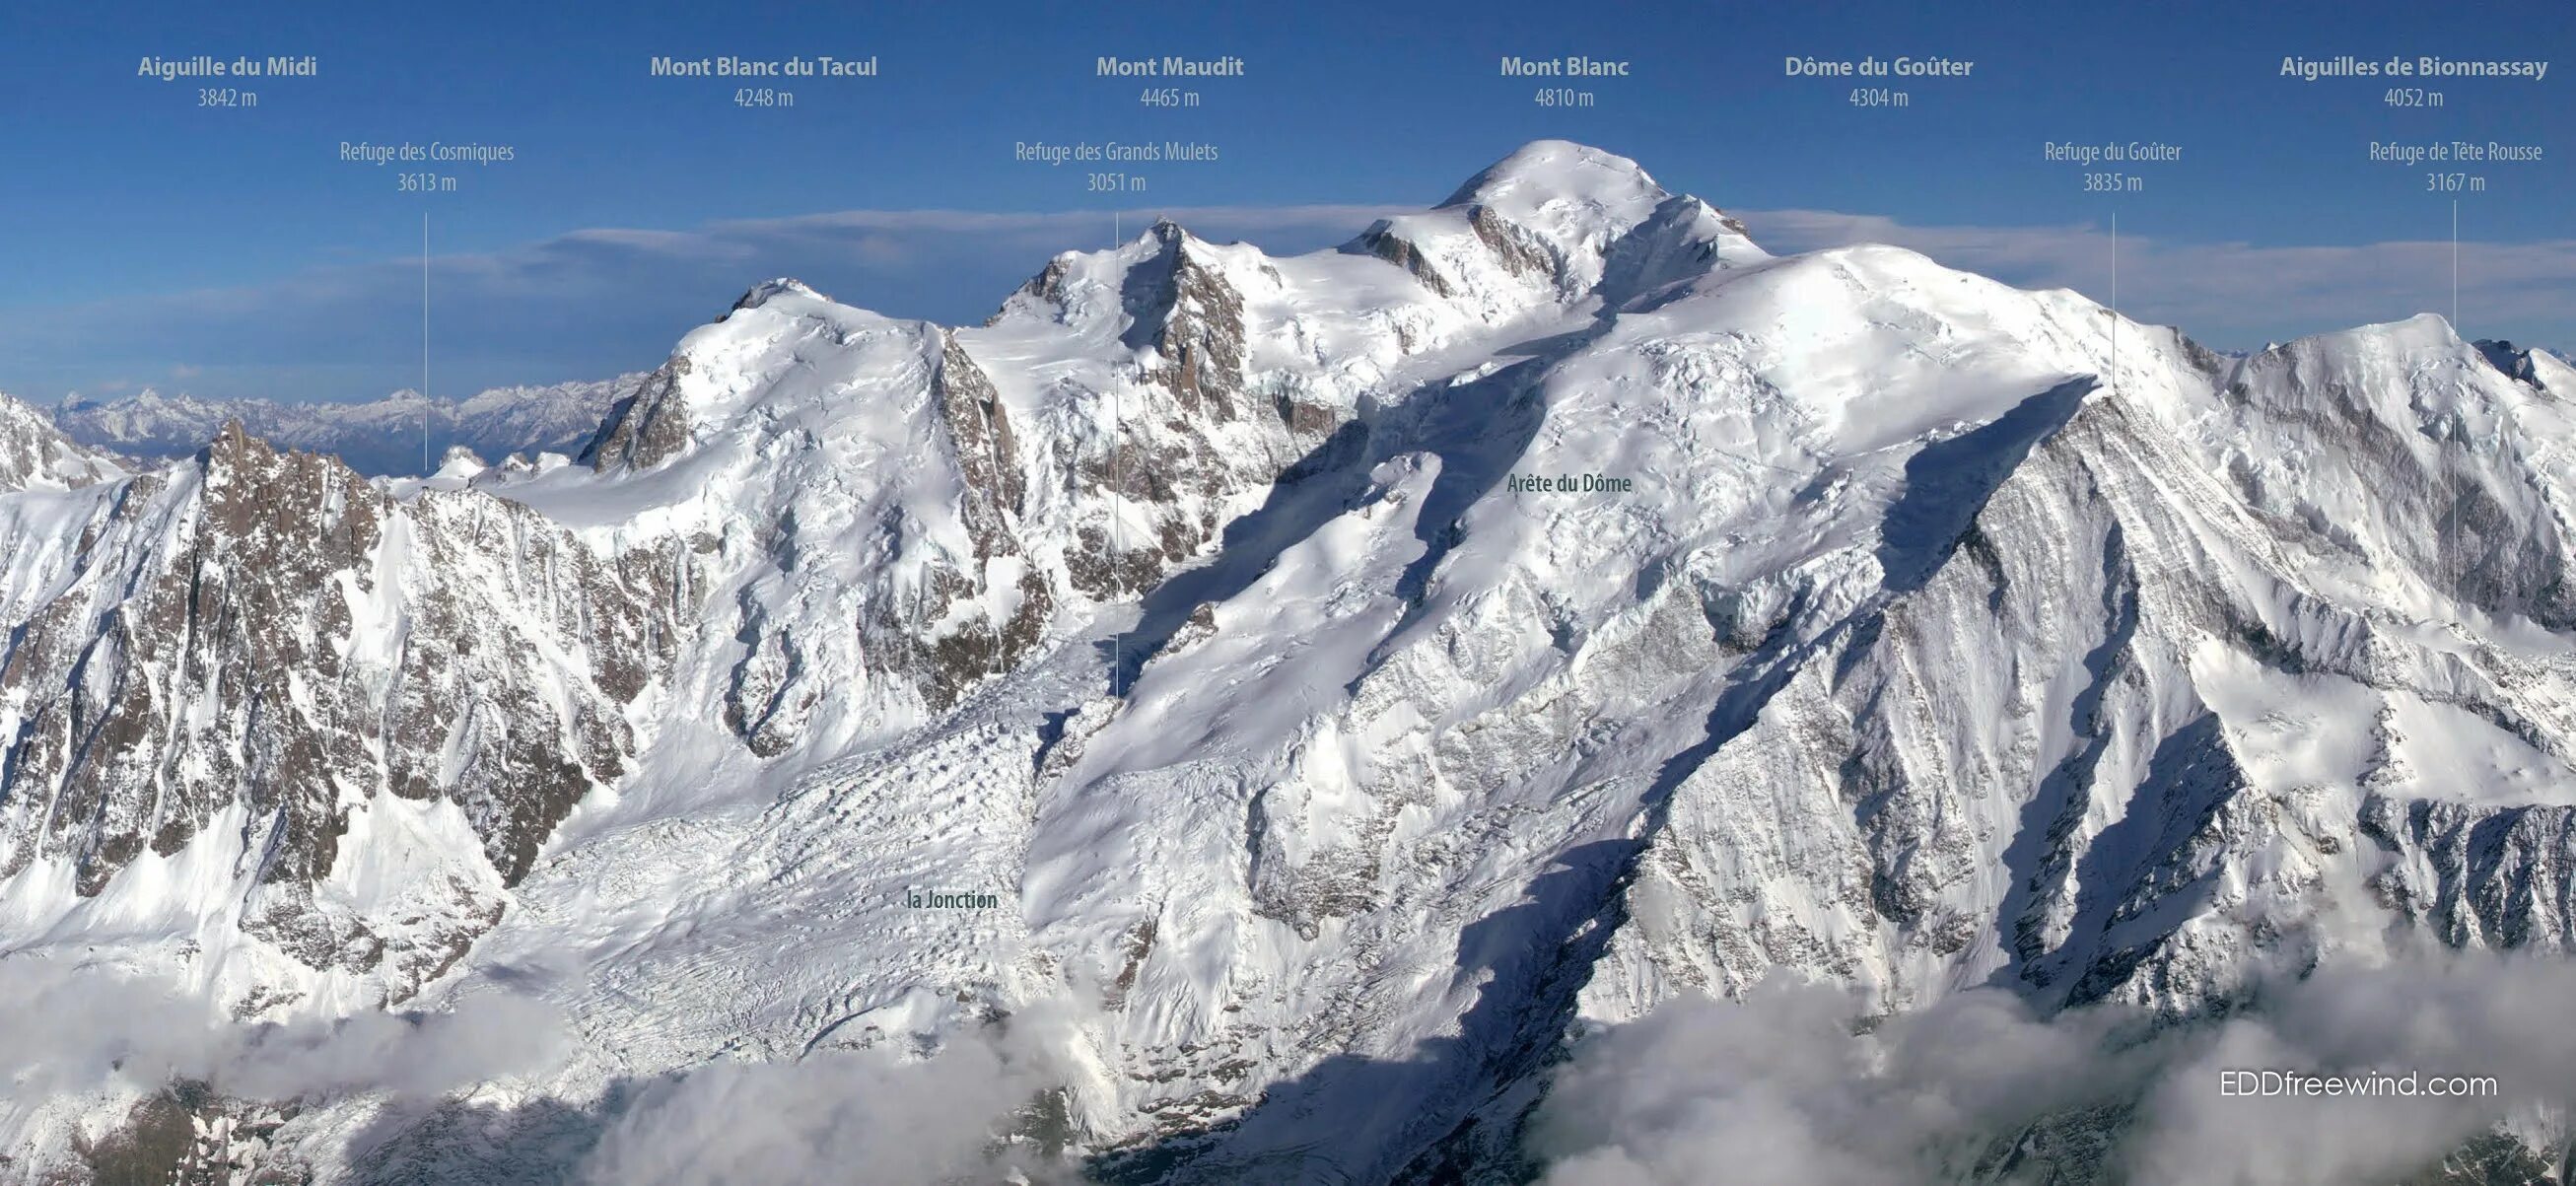 Монблан гора высота над уровнем моря. Монблан, 4807 м). Mont Blanc (Мон Блан) Сочи. Вершина Монблан на карте. Монблан маршруты восхождения.